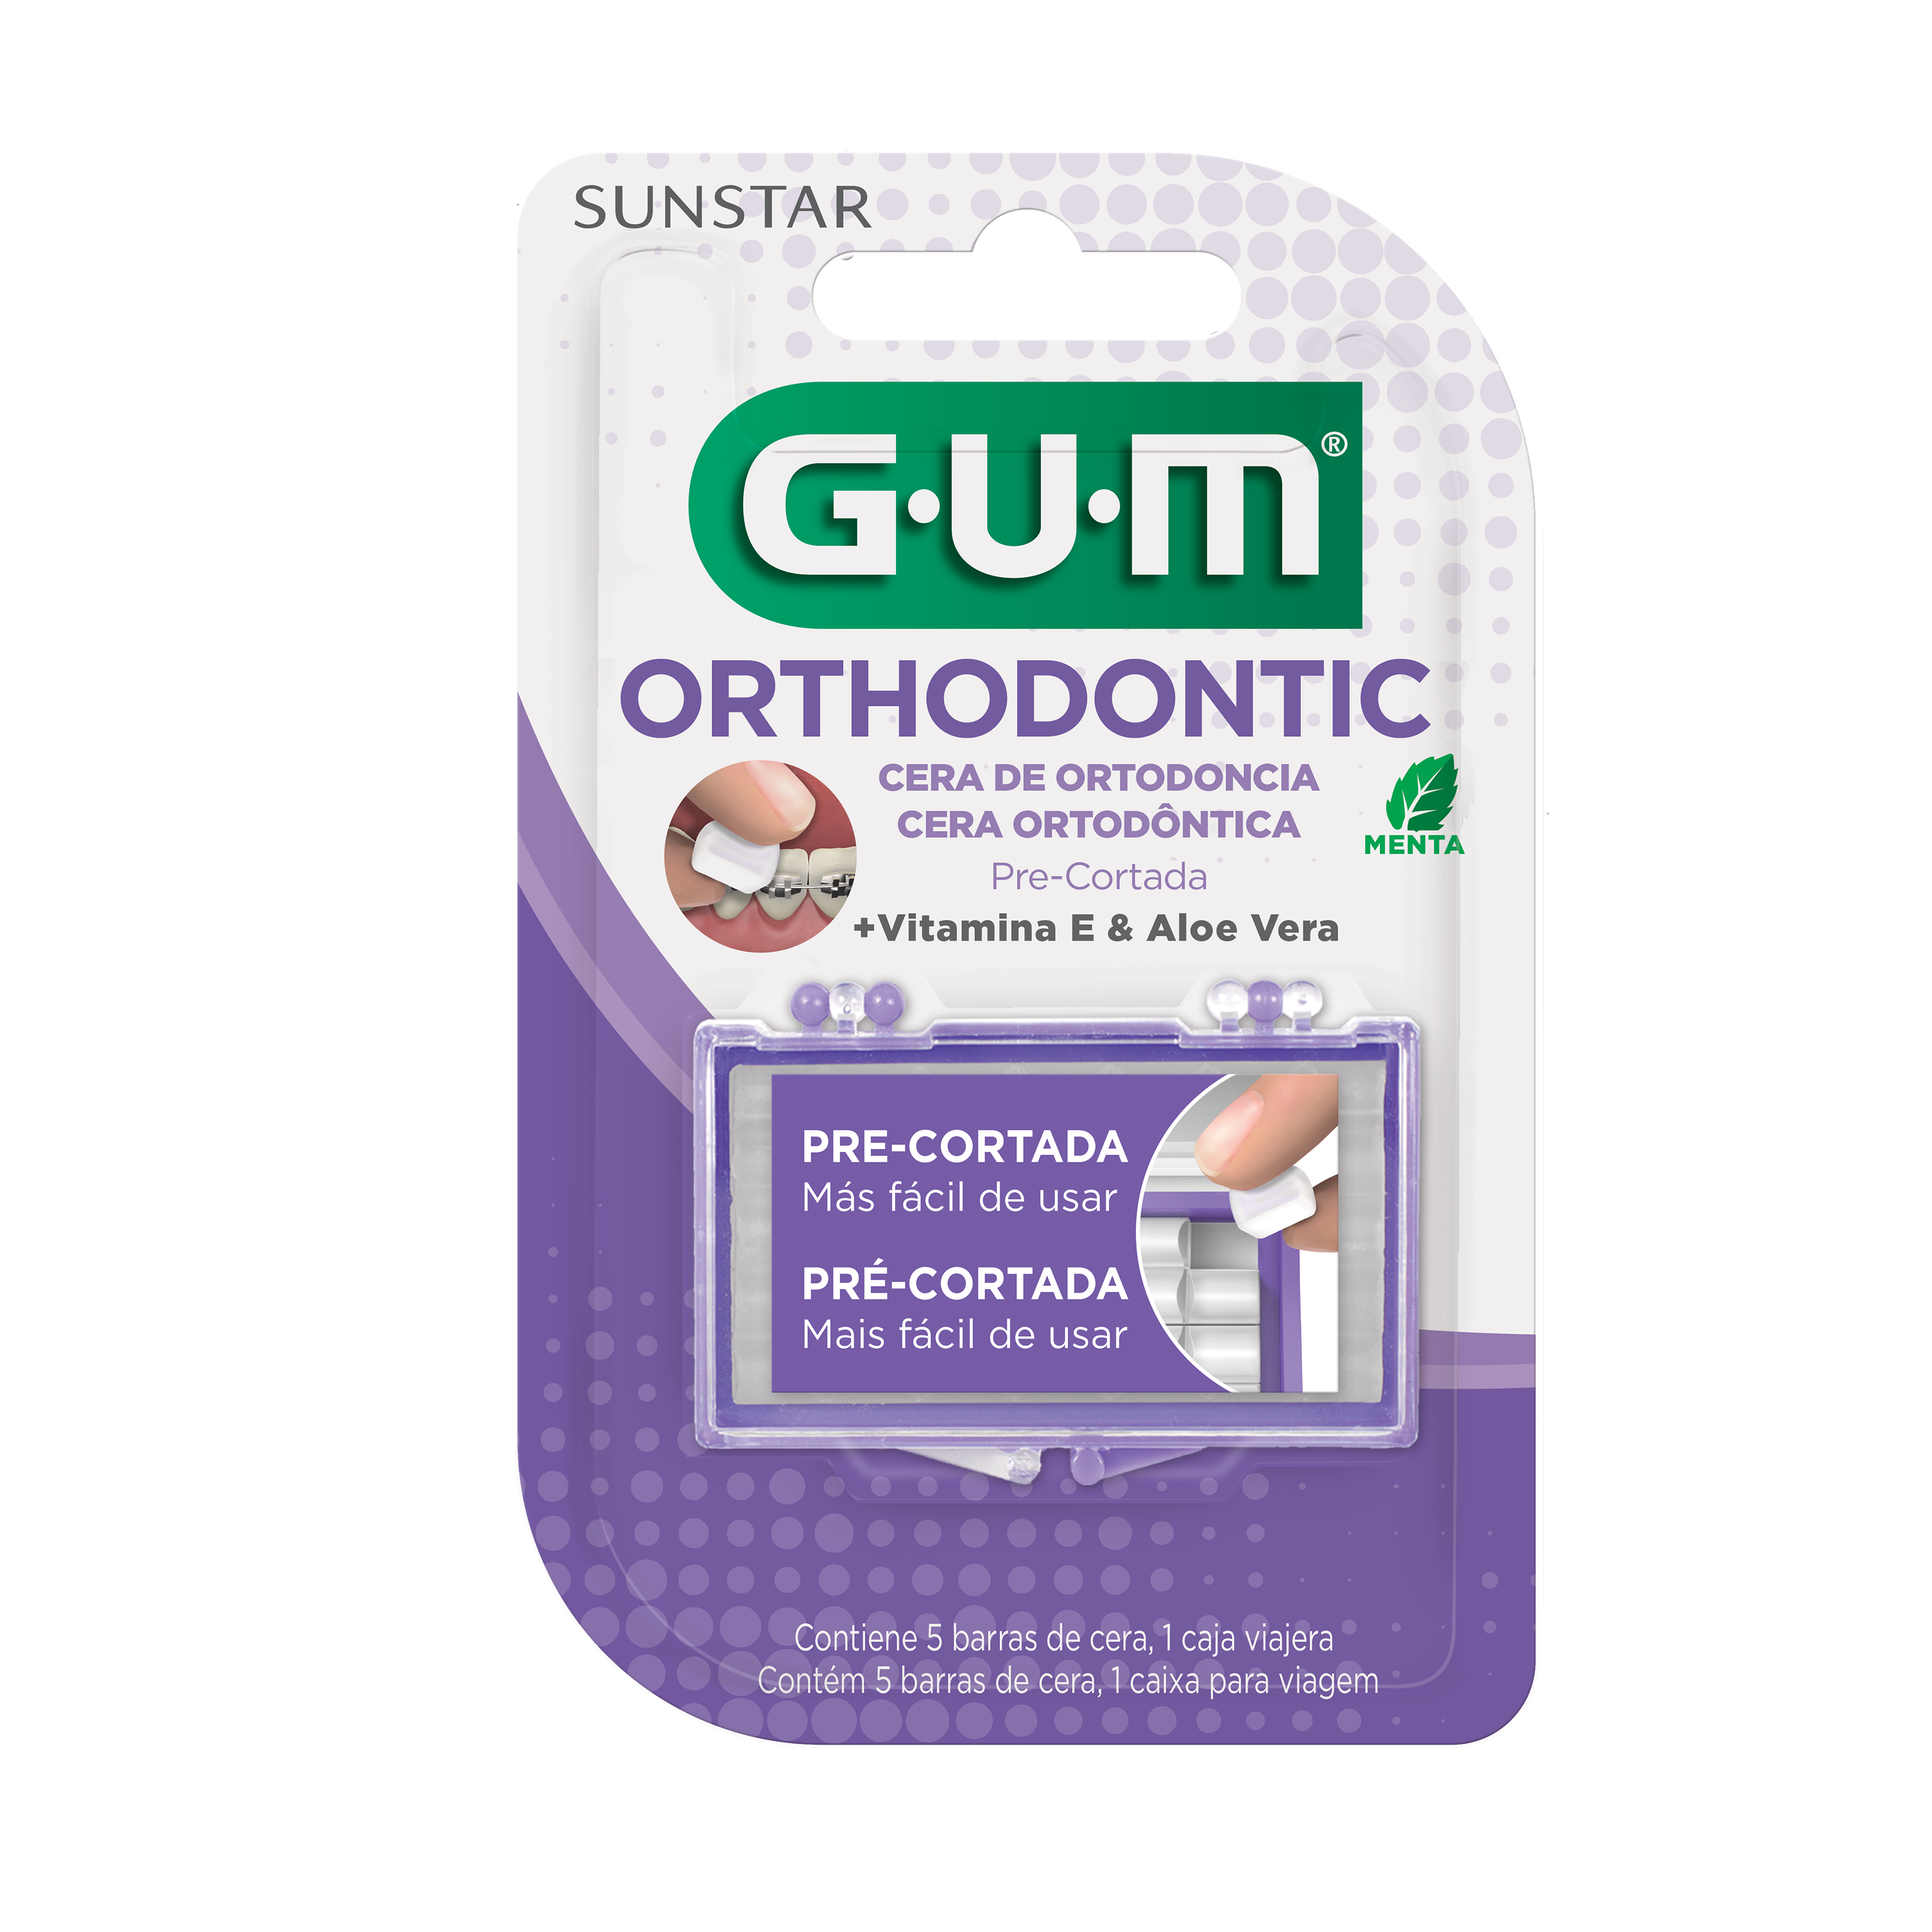 GUM Ortho Wax - Cera para Ortodoncia incolora, sabor menta +Vit. E y Aloe Vera - Estuche x5 barras.